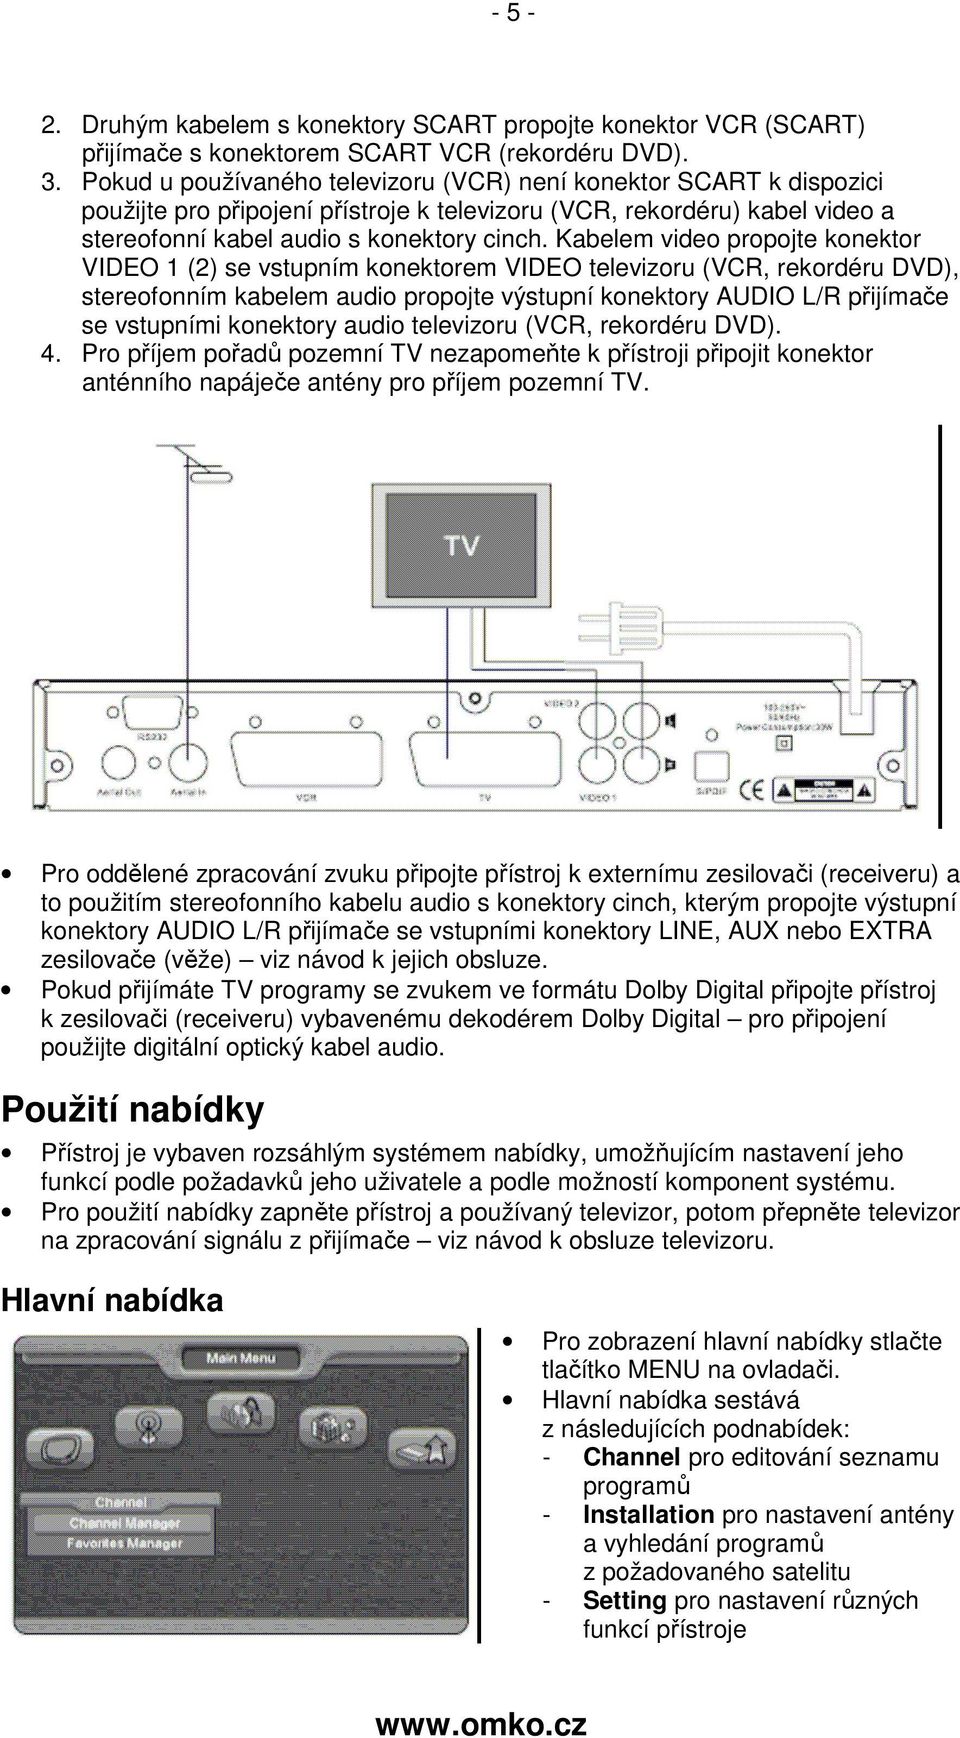 Kabelem video propojte konektor VIDEO 1 (2) se vstupním konektorem VIDEO televizoru (VCR, rekordéru DVD), stereofonním kabelem audio propojte výstupní konektory AUDIO L/R přijímače se vstupními